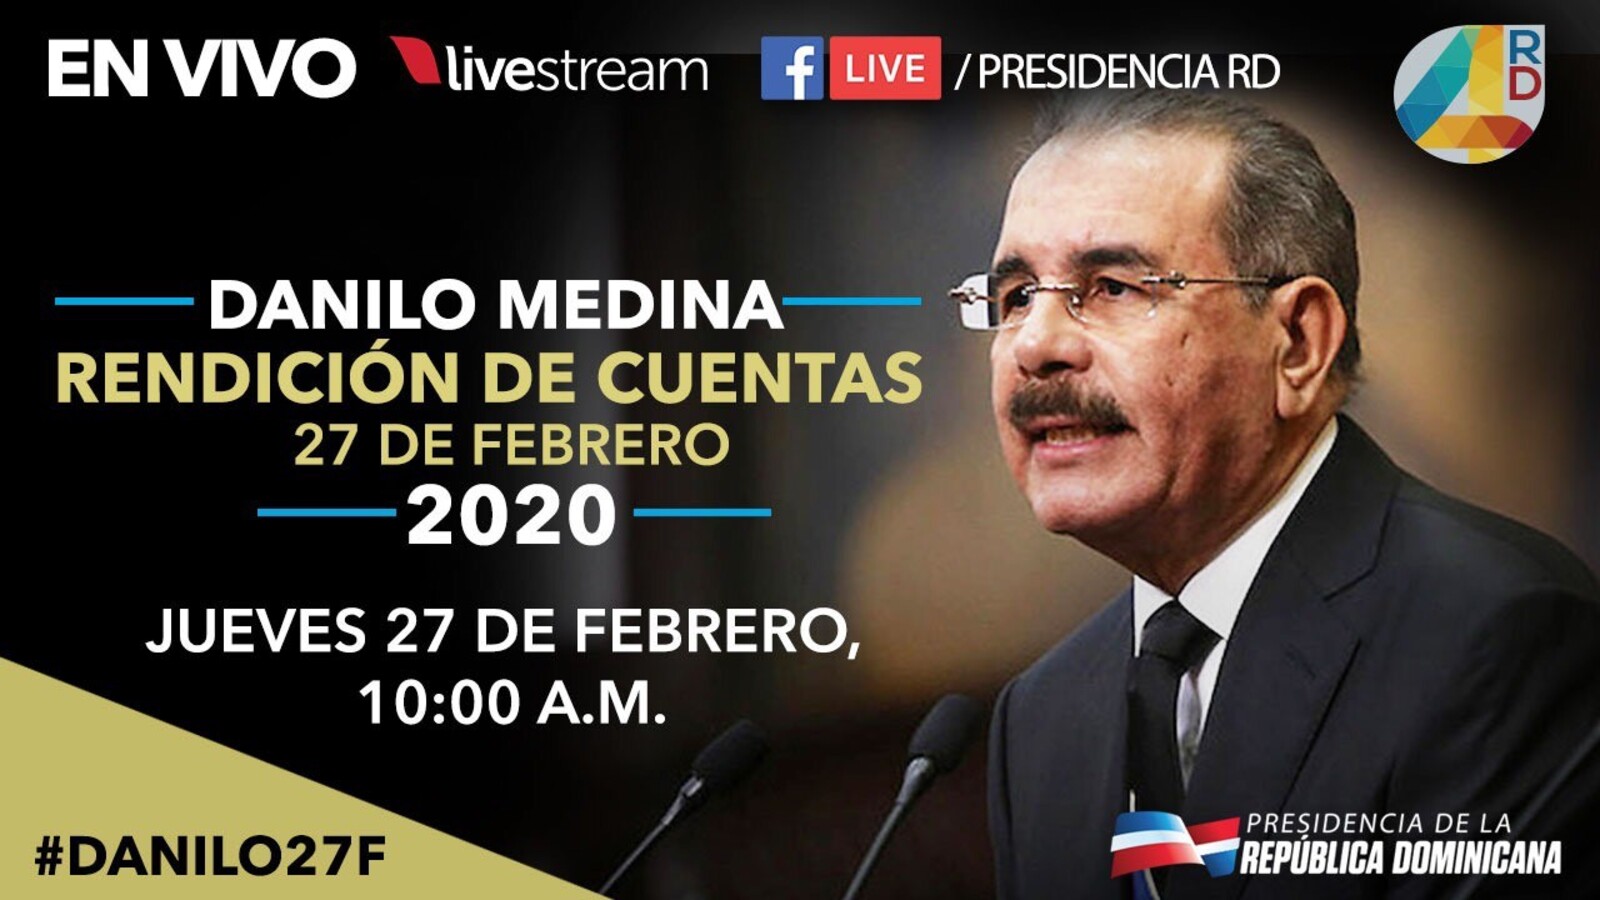 REPÚBLICA DOMINICANA: La más grande red de medios transmitirá en vivo histórica rendición de cuentas de Danilo Medina: 616 canales, emisoras y diarios digitales